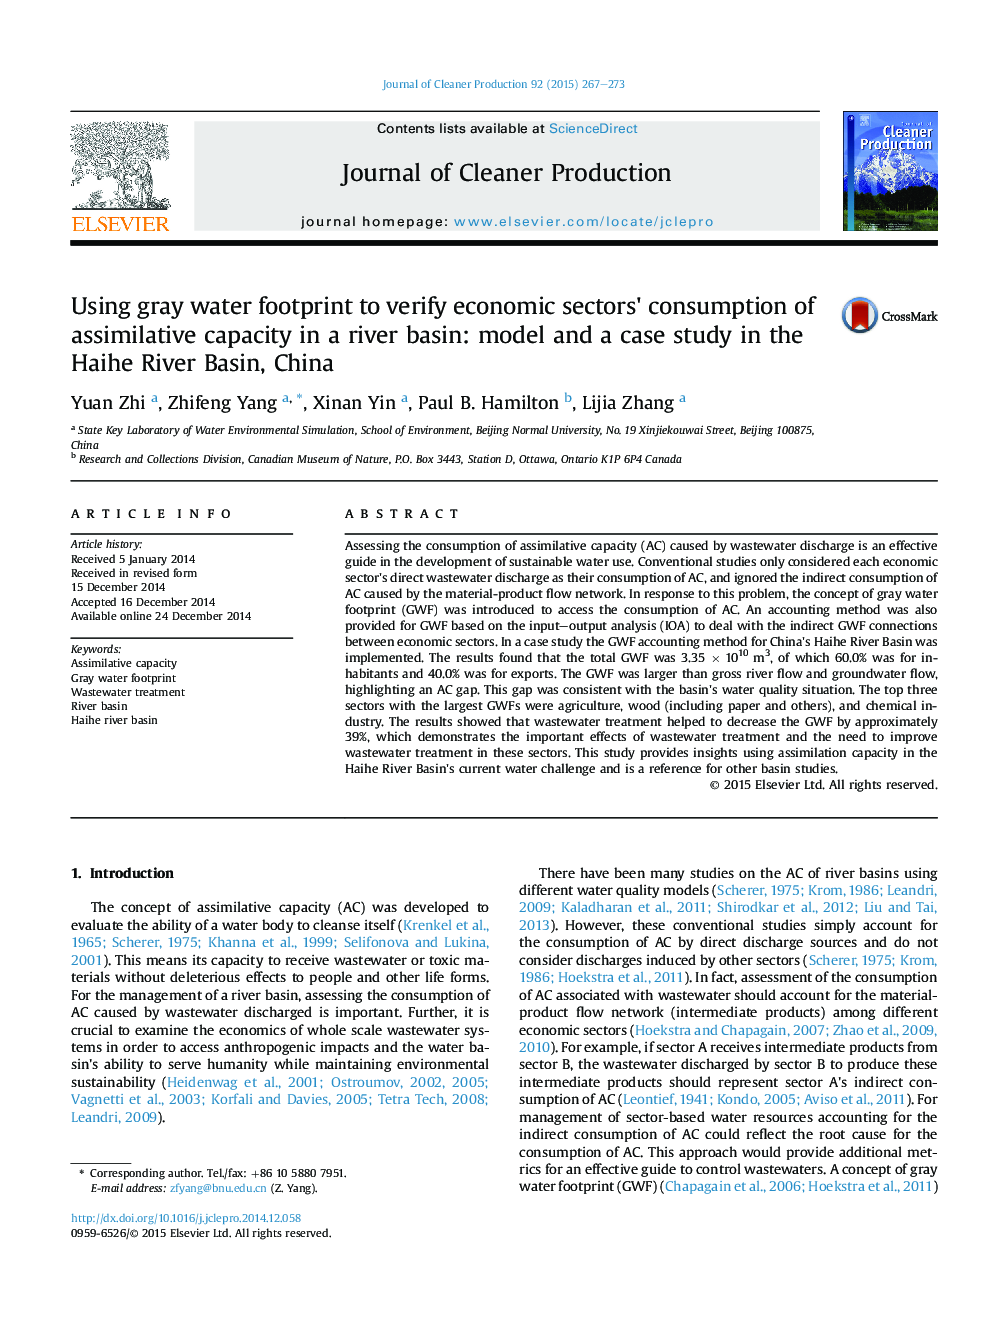 استفاده از محدوده آب خاکستری برای بررسی تأثیر بخش های اقتصادی مصرف ظرفیت جذب در حوضه رودخانه: مدل و مطالعه موردی حوضه رودخانه هائه، چین 